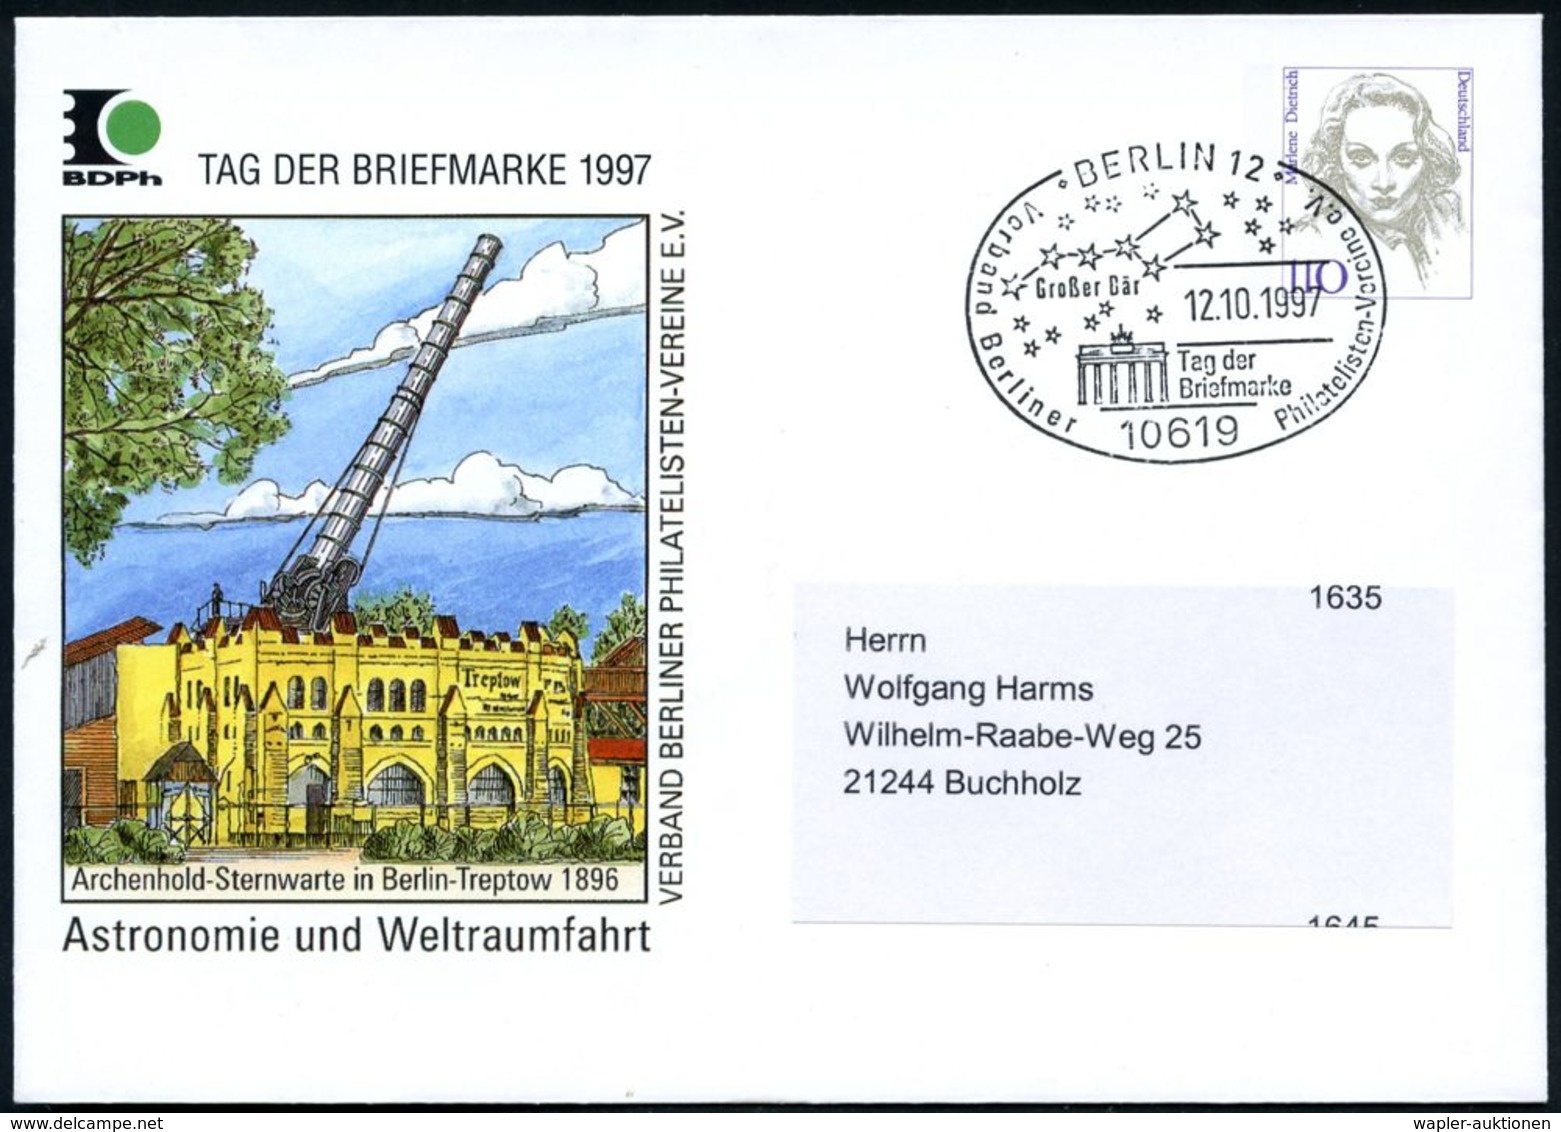 10619 BERLIN 12/ Großer Bär/ Tag Der/ Briefmarke.. 1997 (12.10.) SSt = Sternbild "Gr. Bär" (Gr. Wagen) U. Branden-bg. To - Astronomia